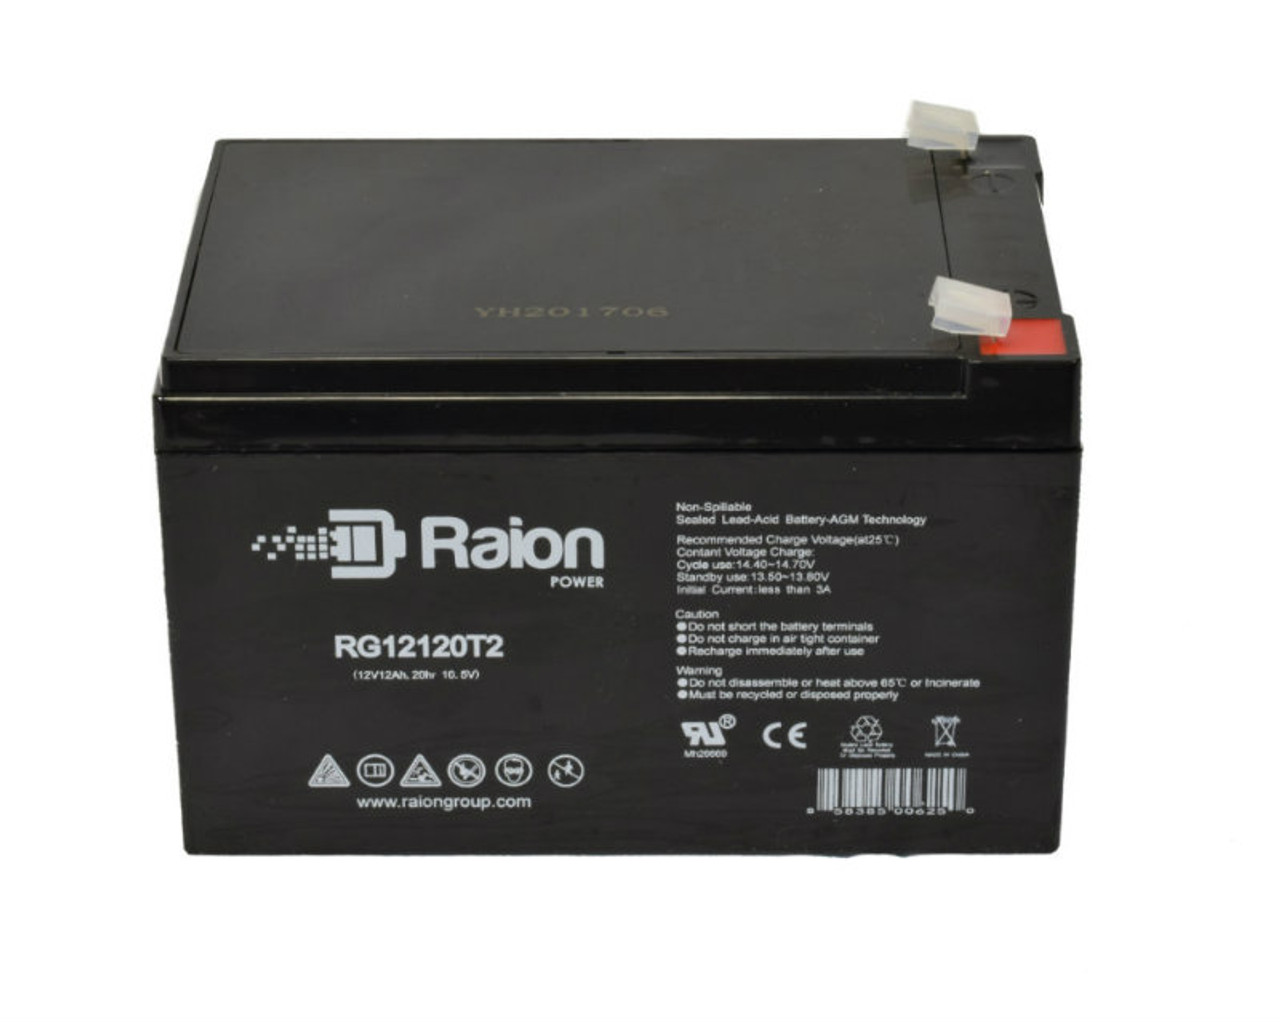 Raion Power RG12120T2 SLA Battery for Henglypower HL12100